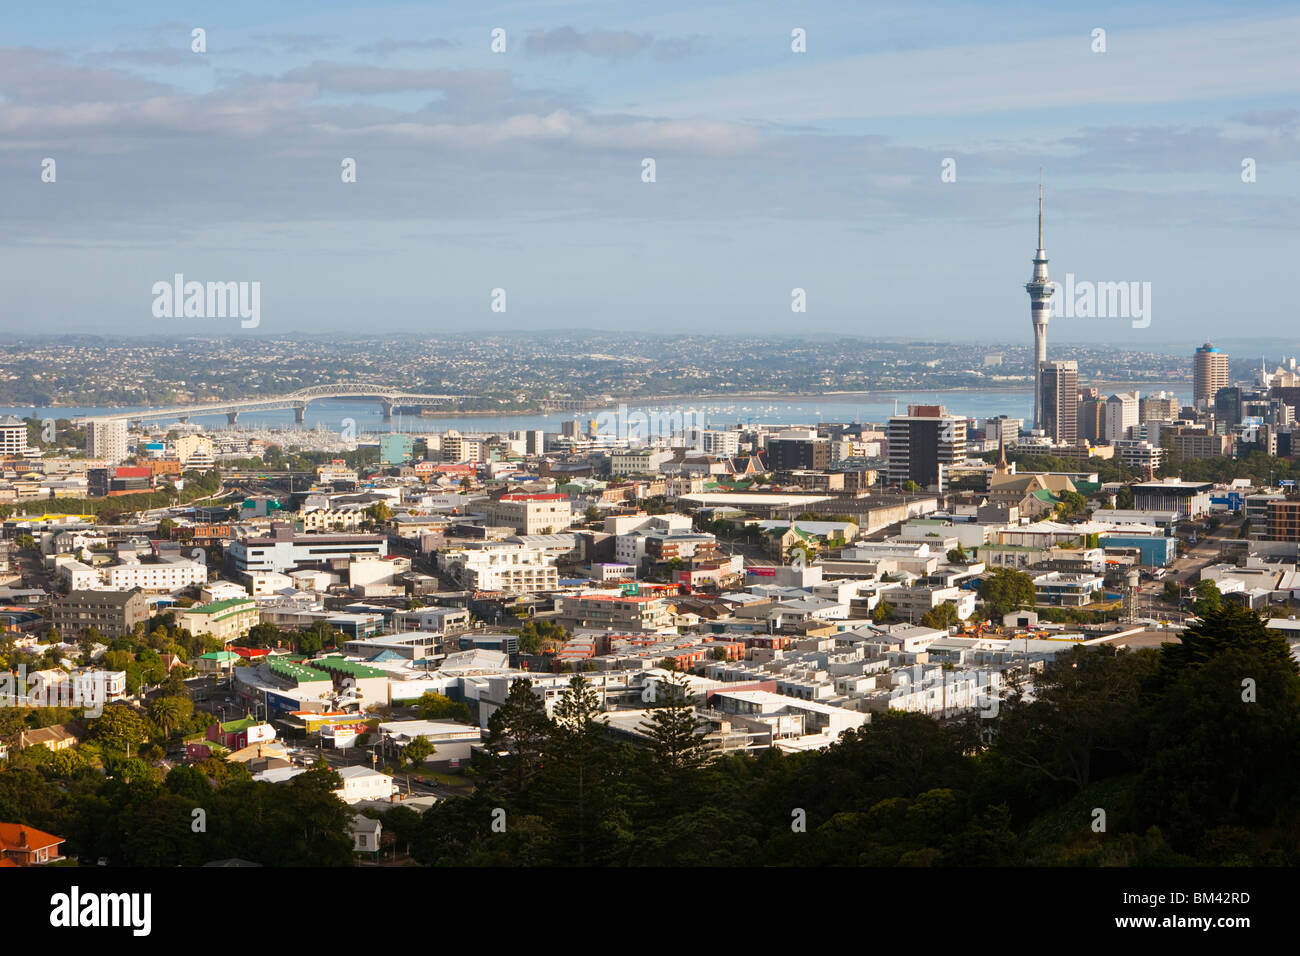 Vue de la ville de Mt Eden (Maungawhau). Auckland, île du Nord, Nouvelle-Zélande Banque D'Images